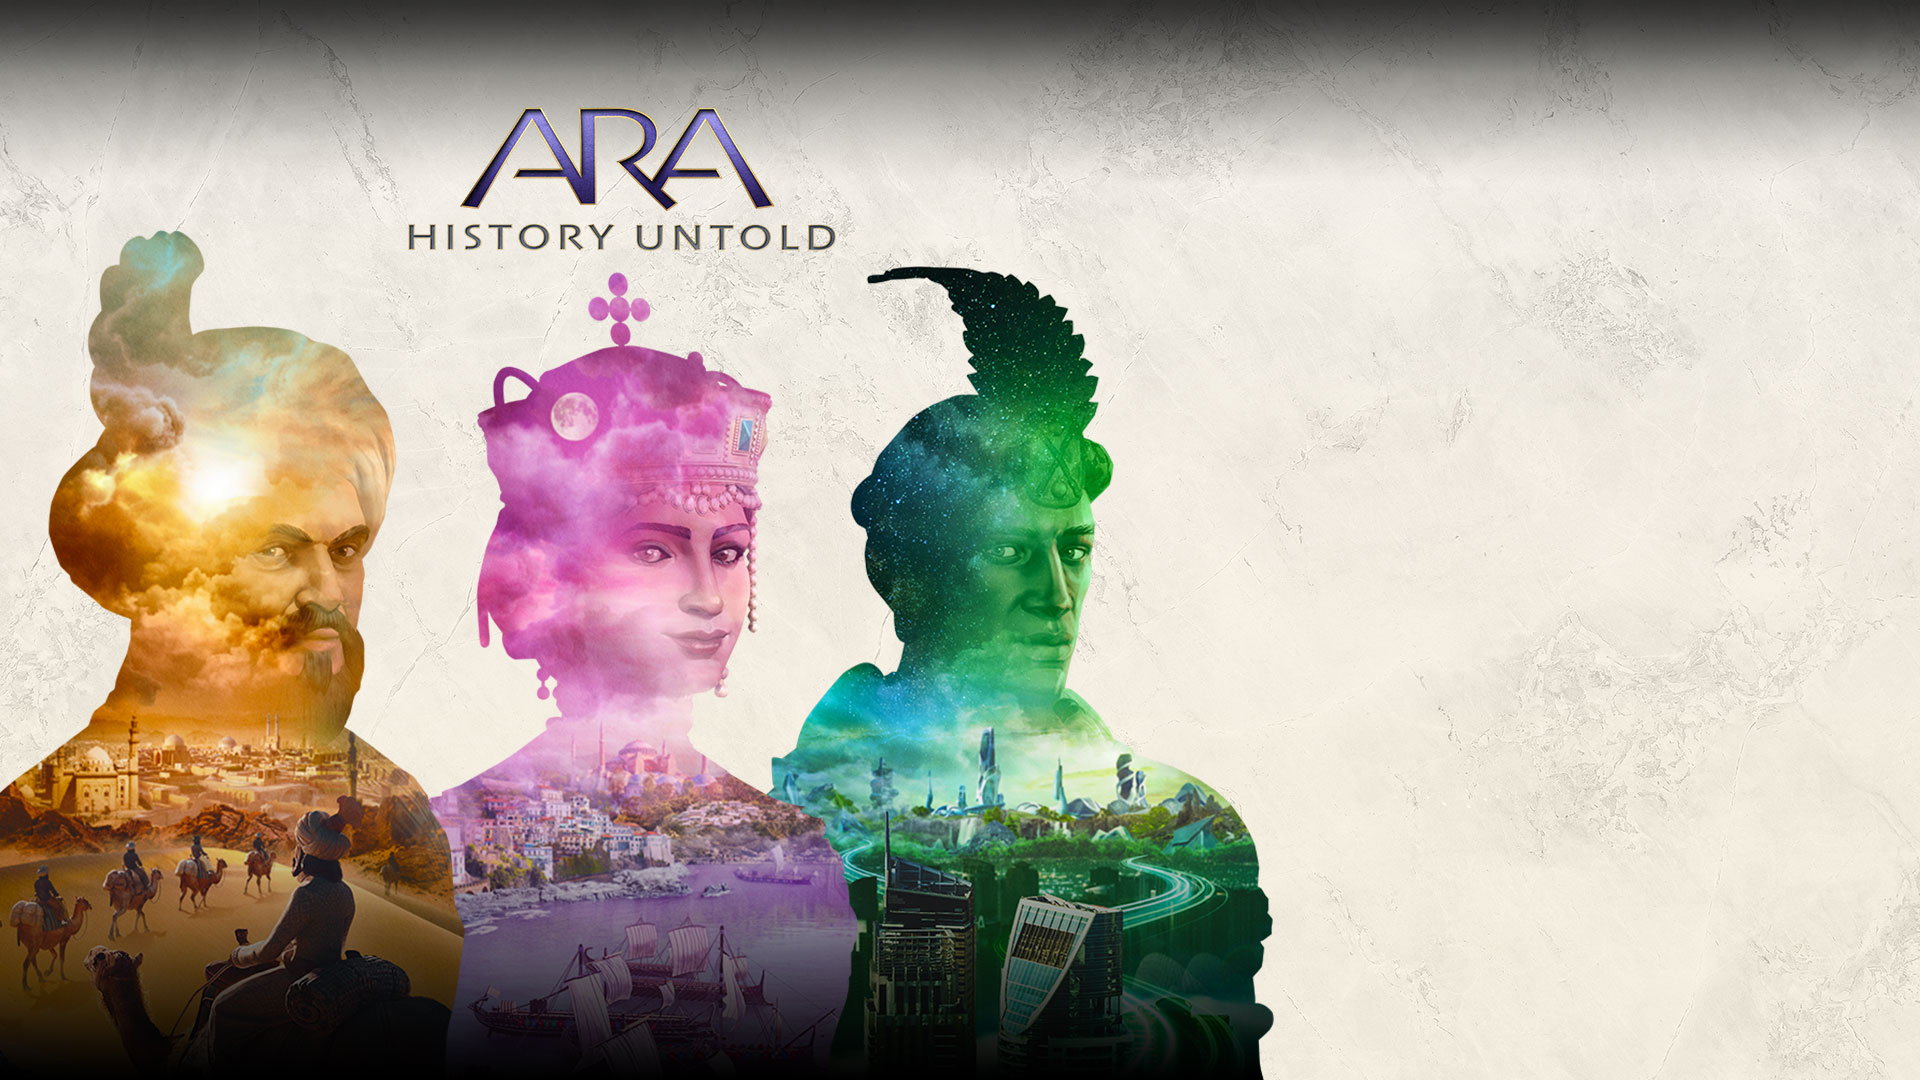 Ara: History Untold。3 人の透明な人のシルエットの中にそれぞれ異なる都市の風景が映っている。